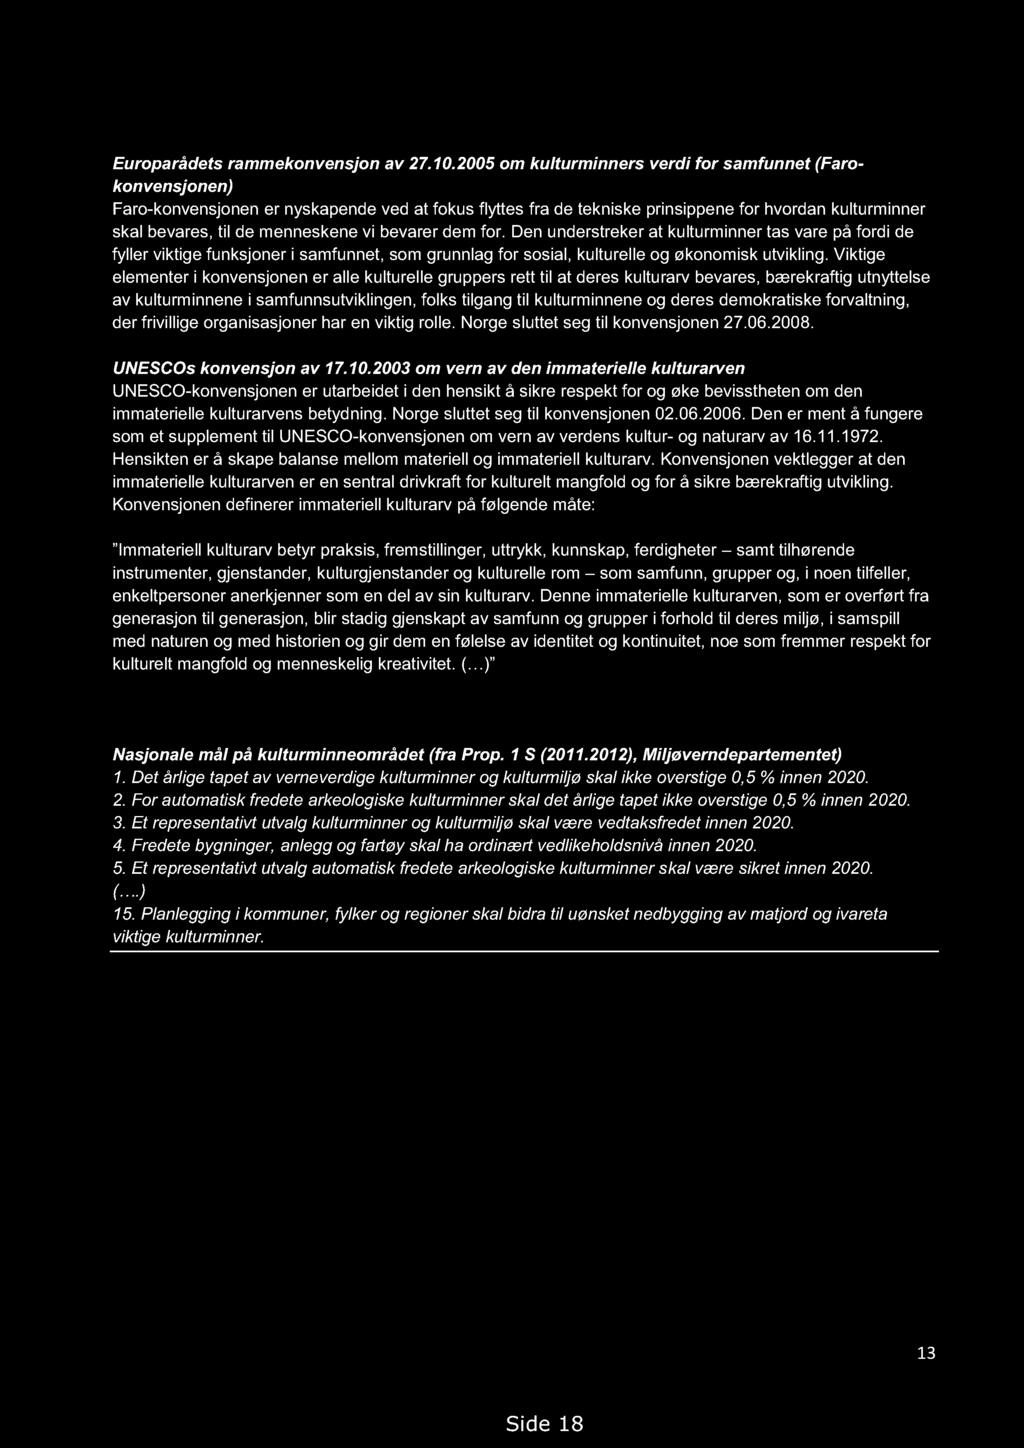 Handlingsprogram for kulturminner i Akershus 2013-2018. Høringsutkast 14.09.2012, med endringer 19.02.2013 FAKTARAMME 4: Europarådets rammekonvensjon av 27.10.